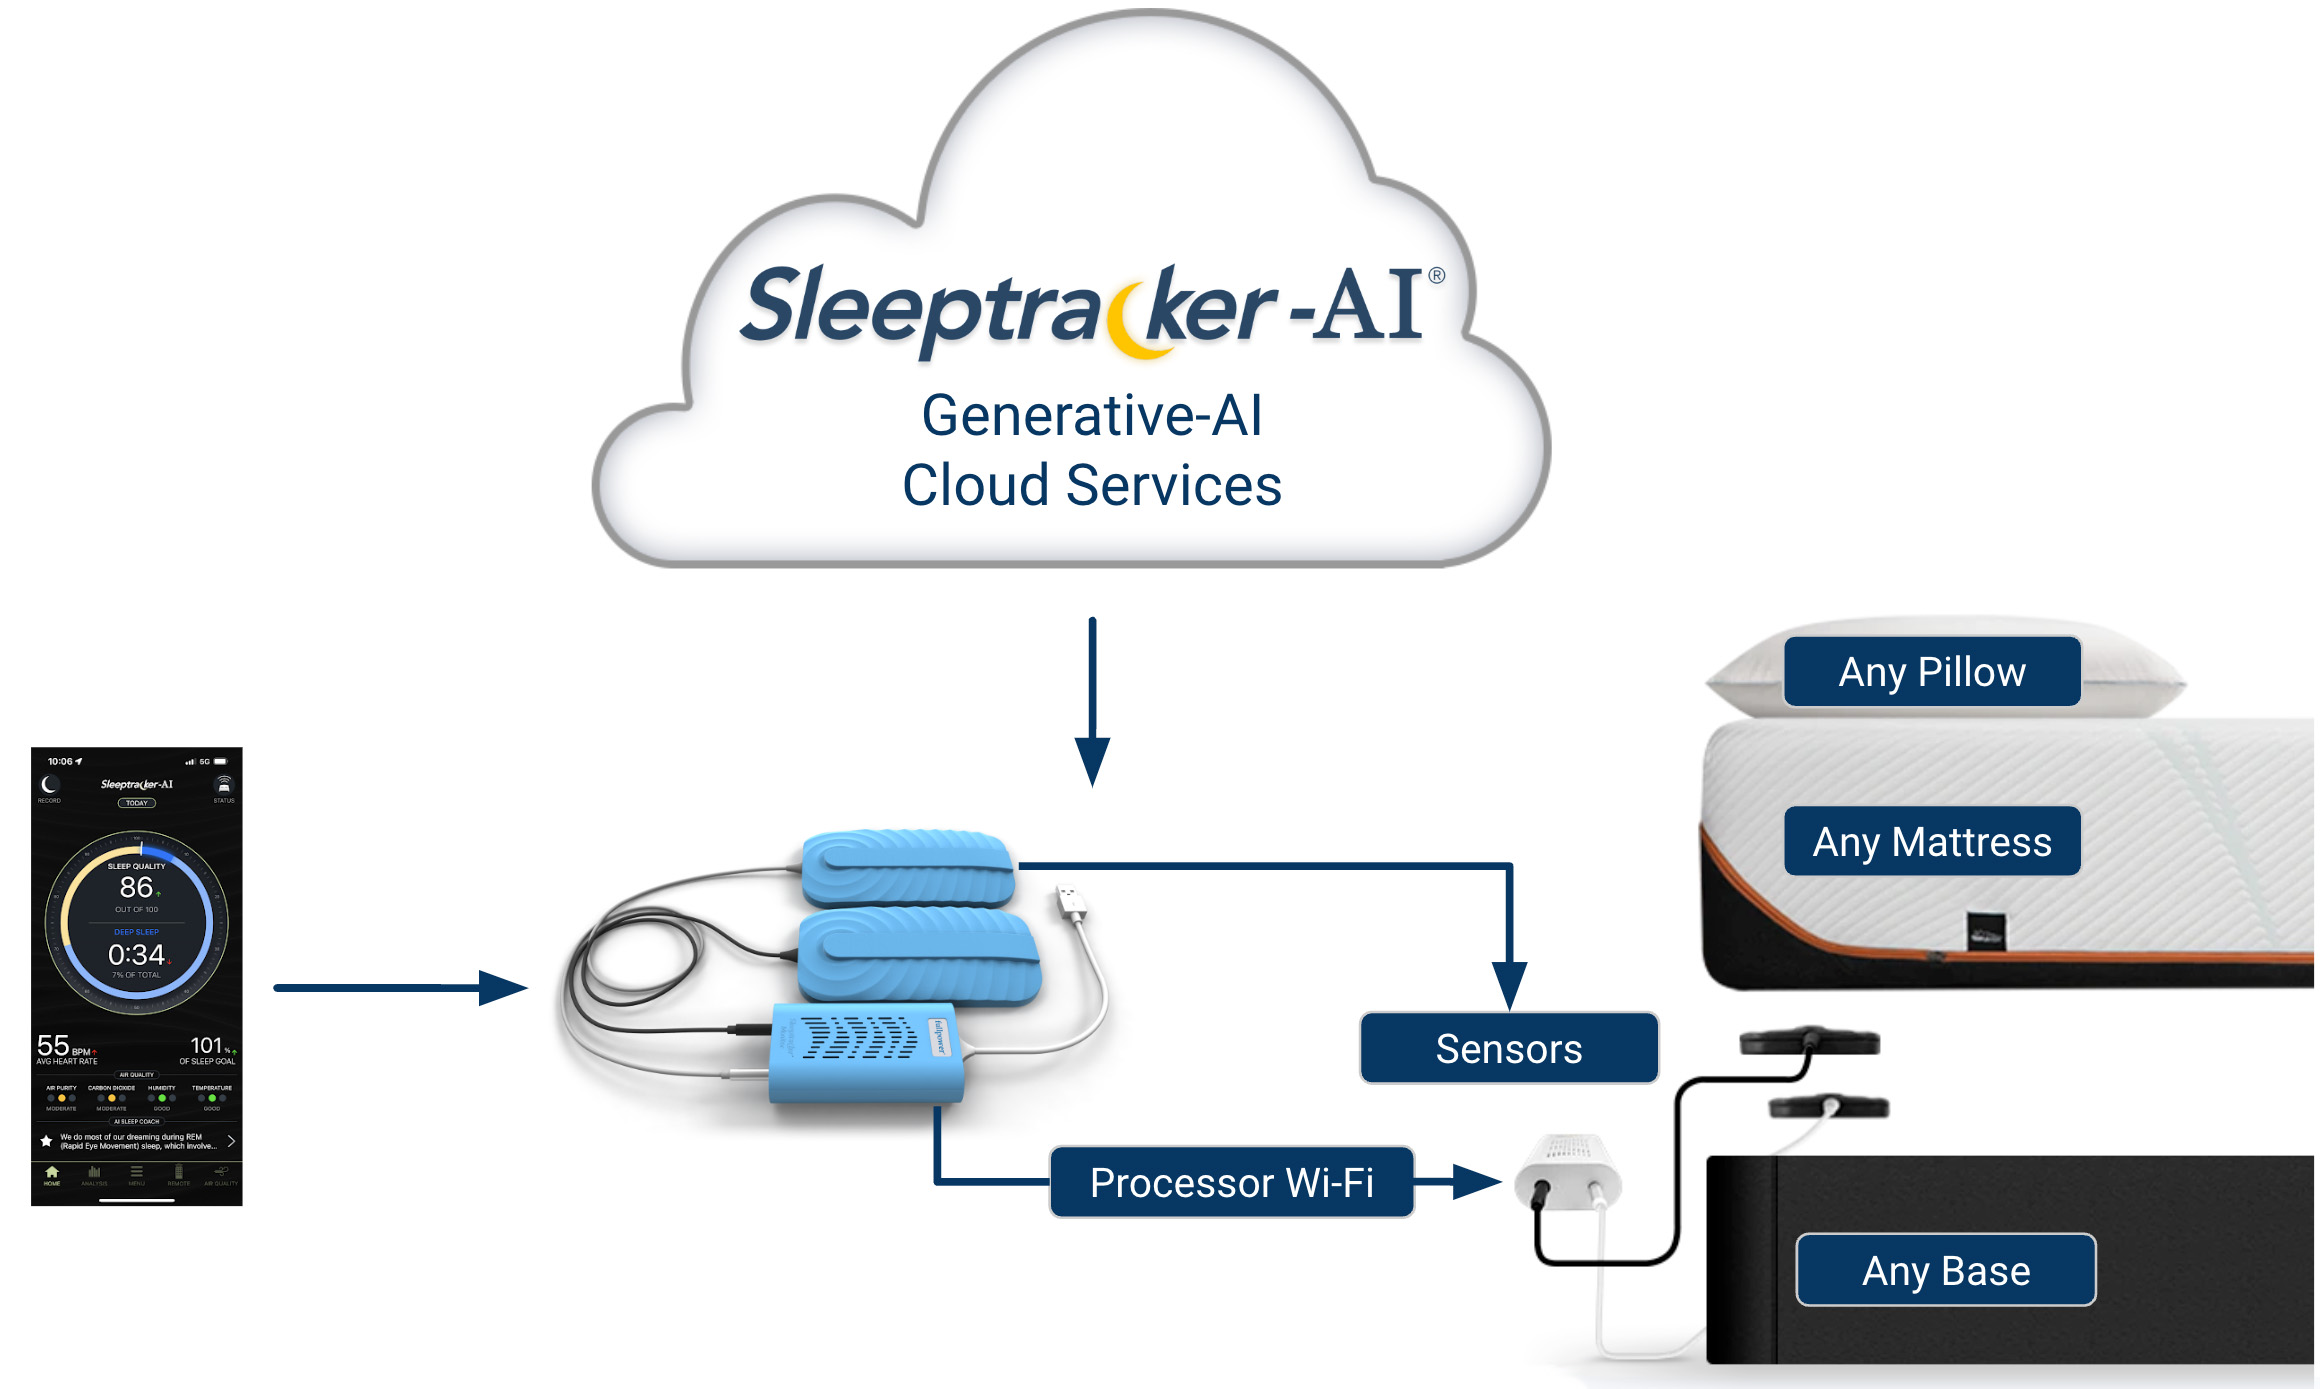 Sleep Research & AI Technology Expertise | Sleeptracker-AI®